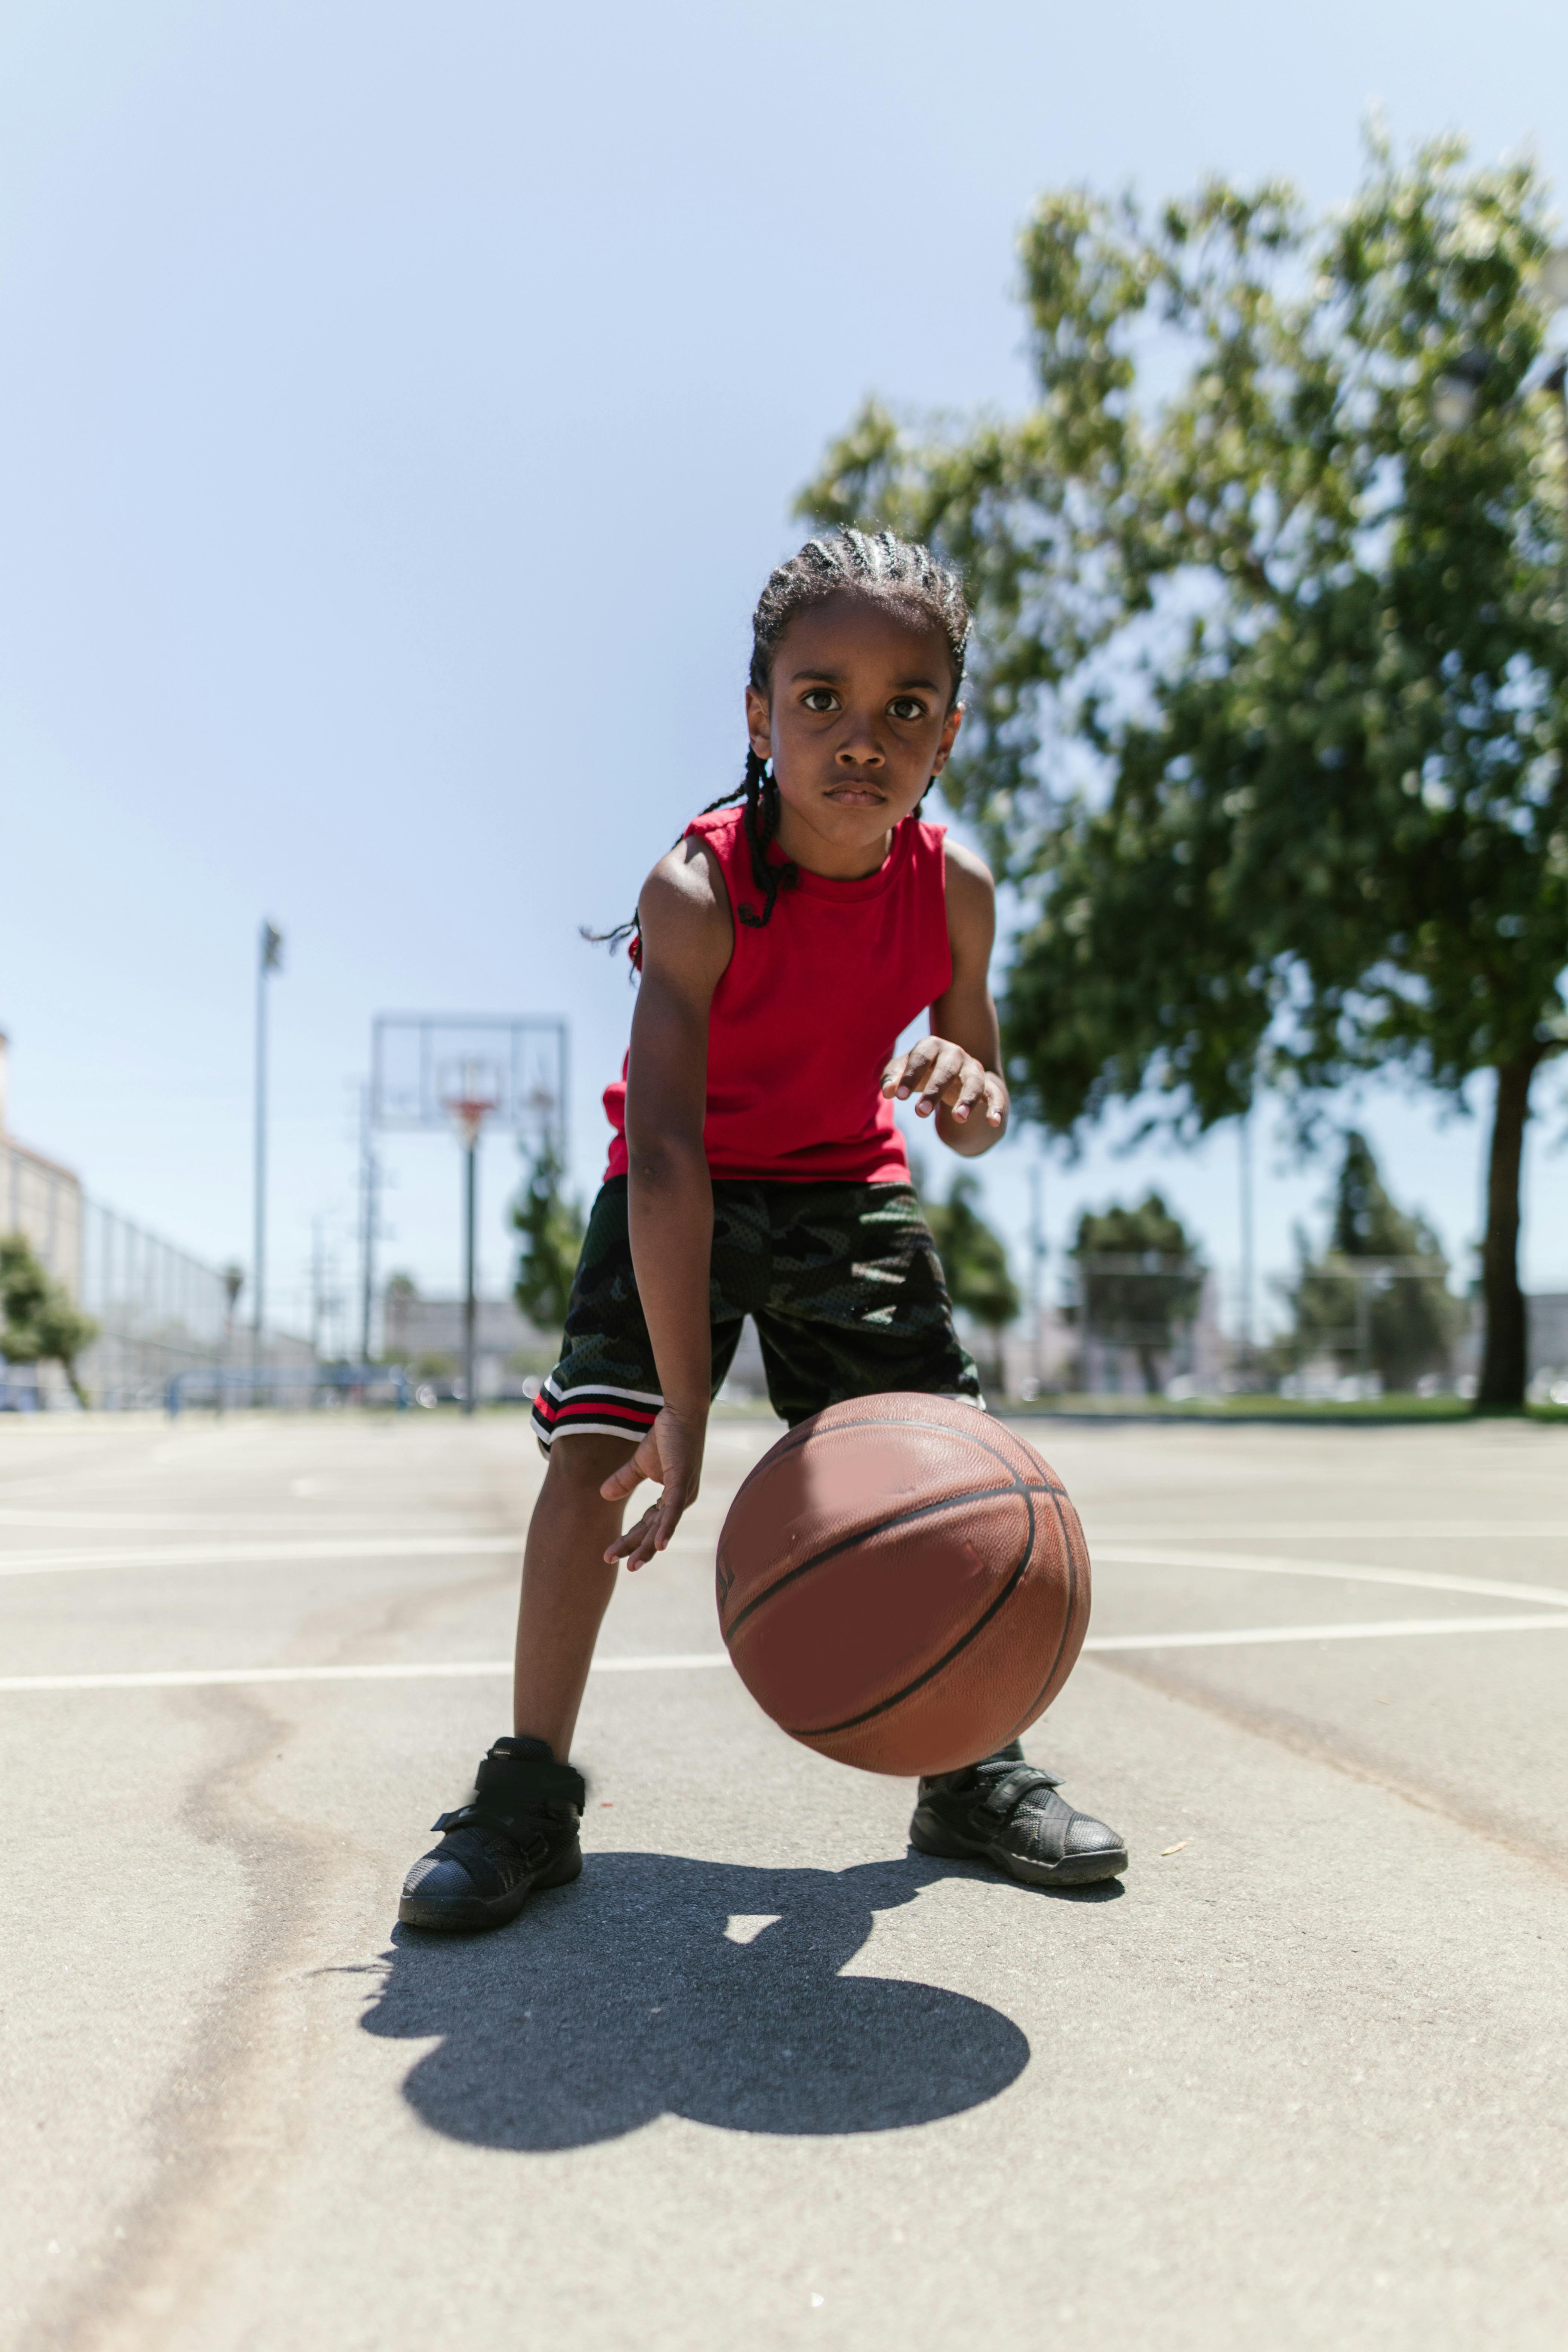 black kid playing basketball